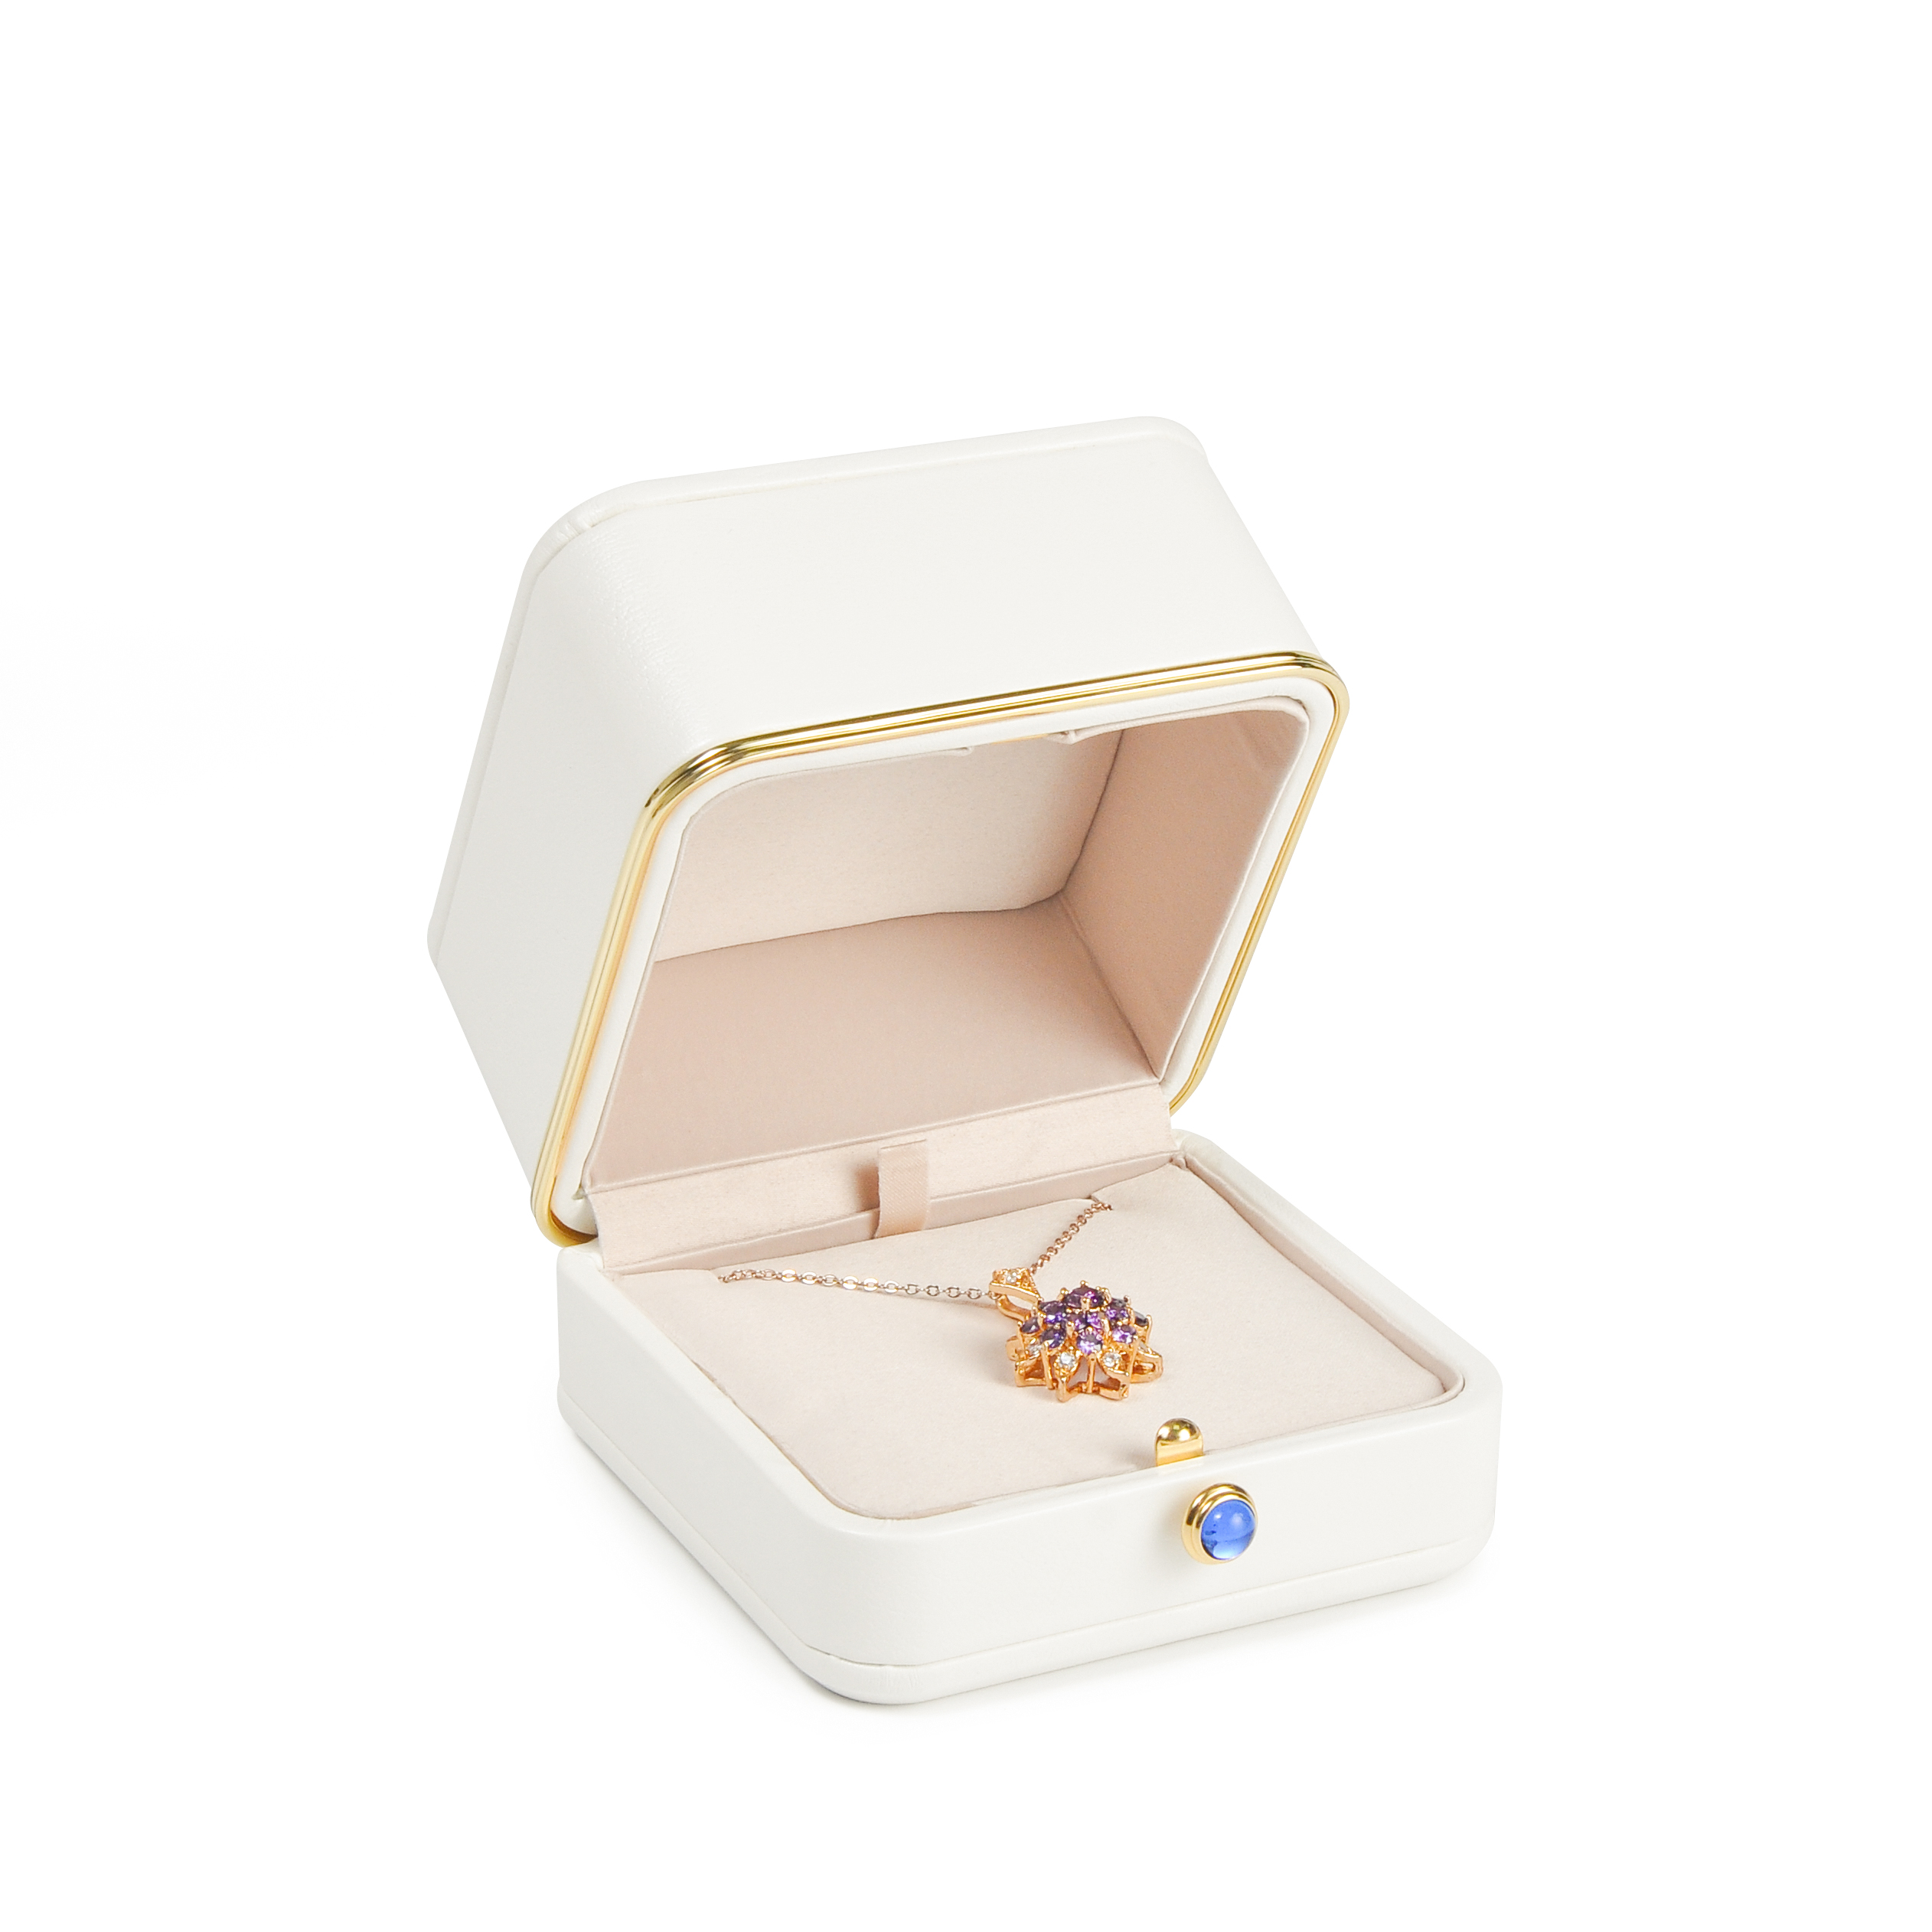 Yadao vyrábí bílé pendant box Pu kožené bižuterie s logem pro svatbu